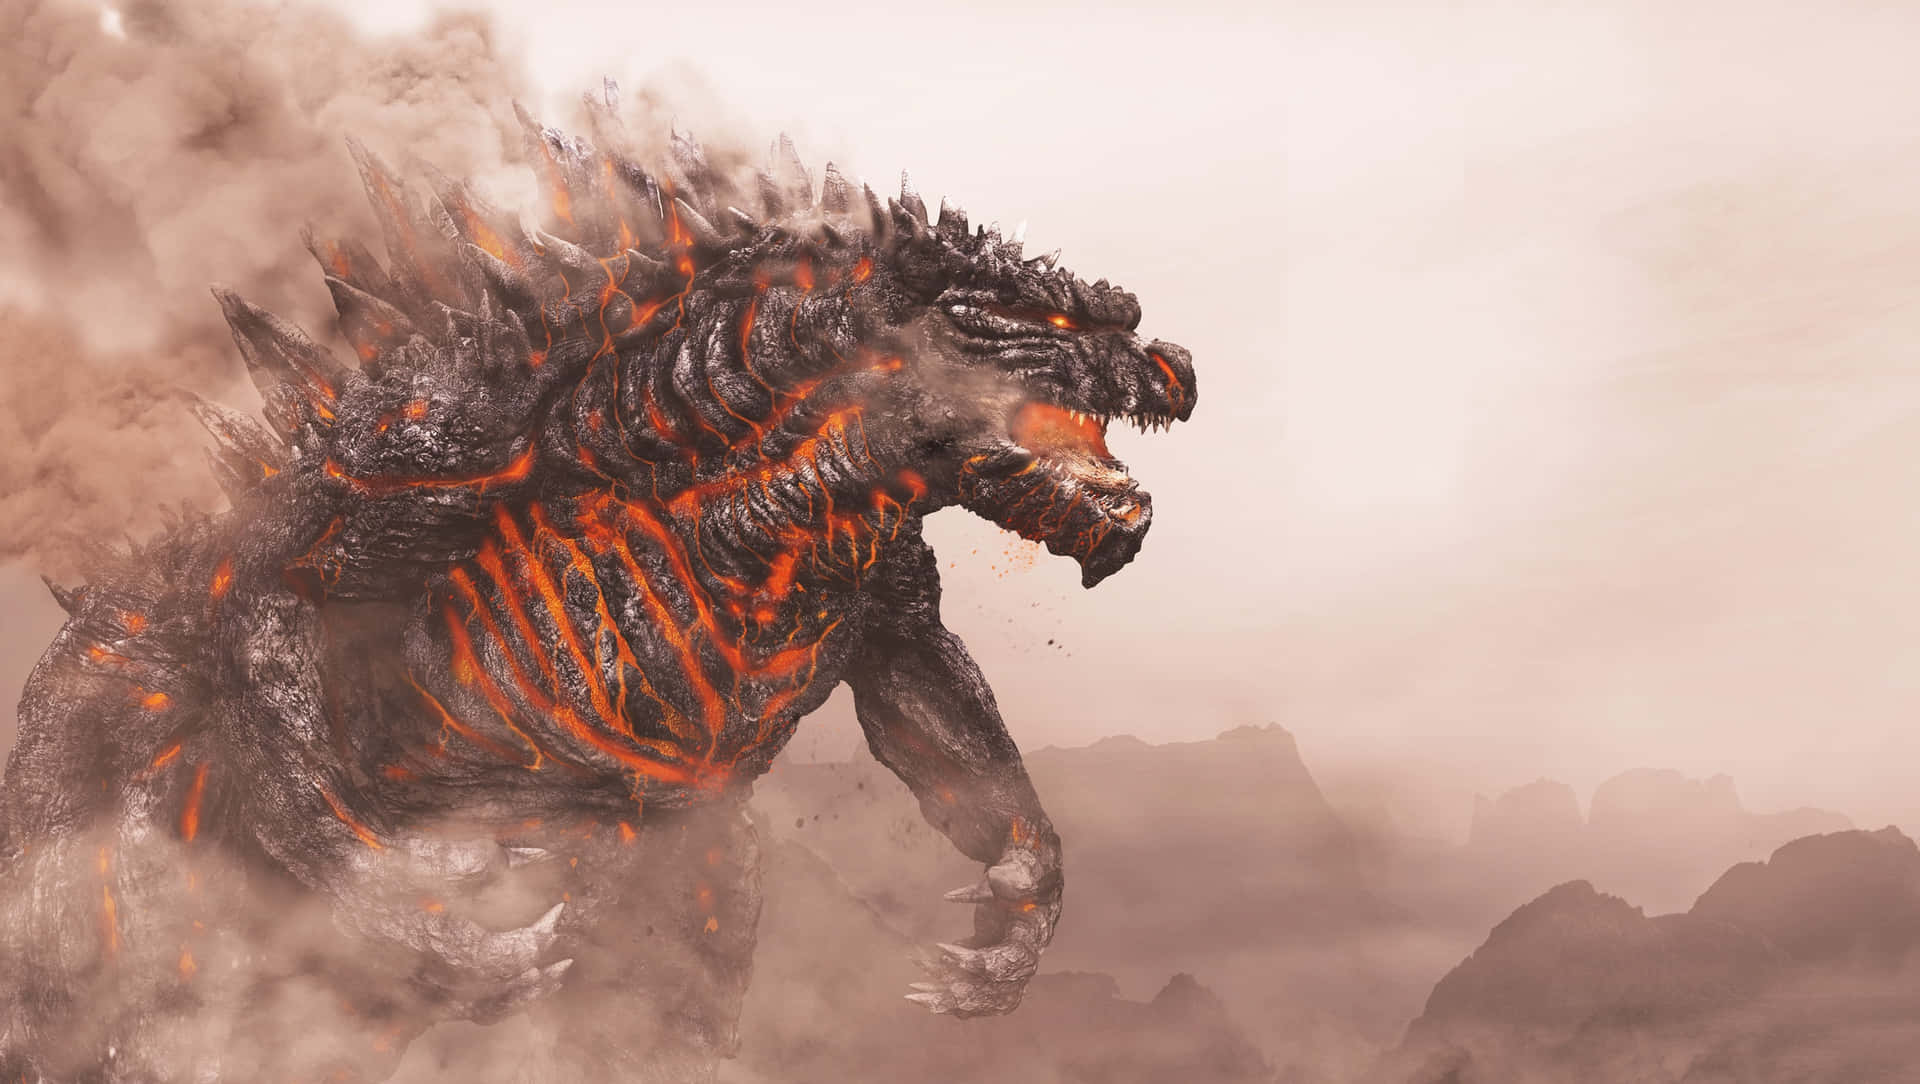 Cool And Powerful Godzilla Wallpaper